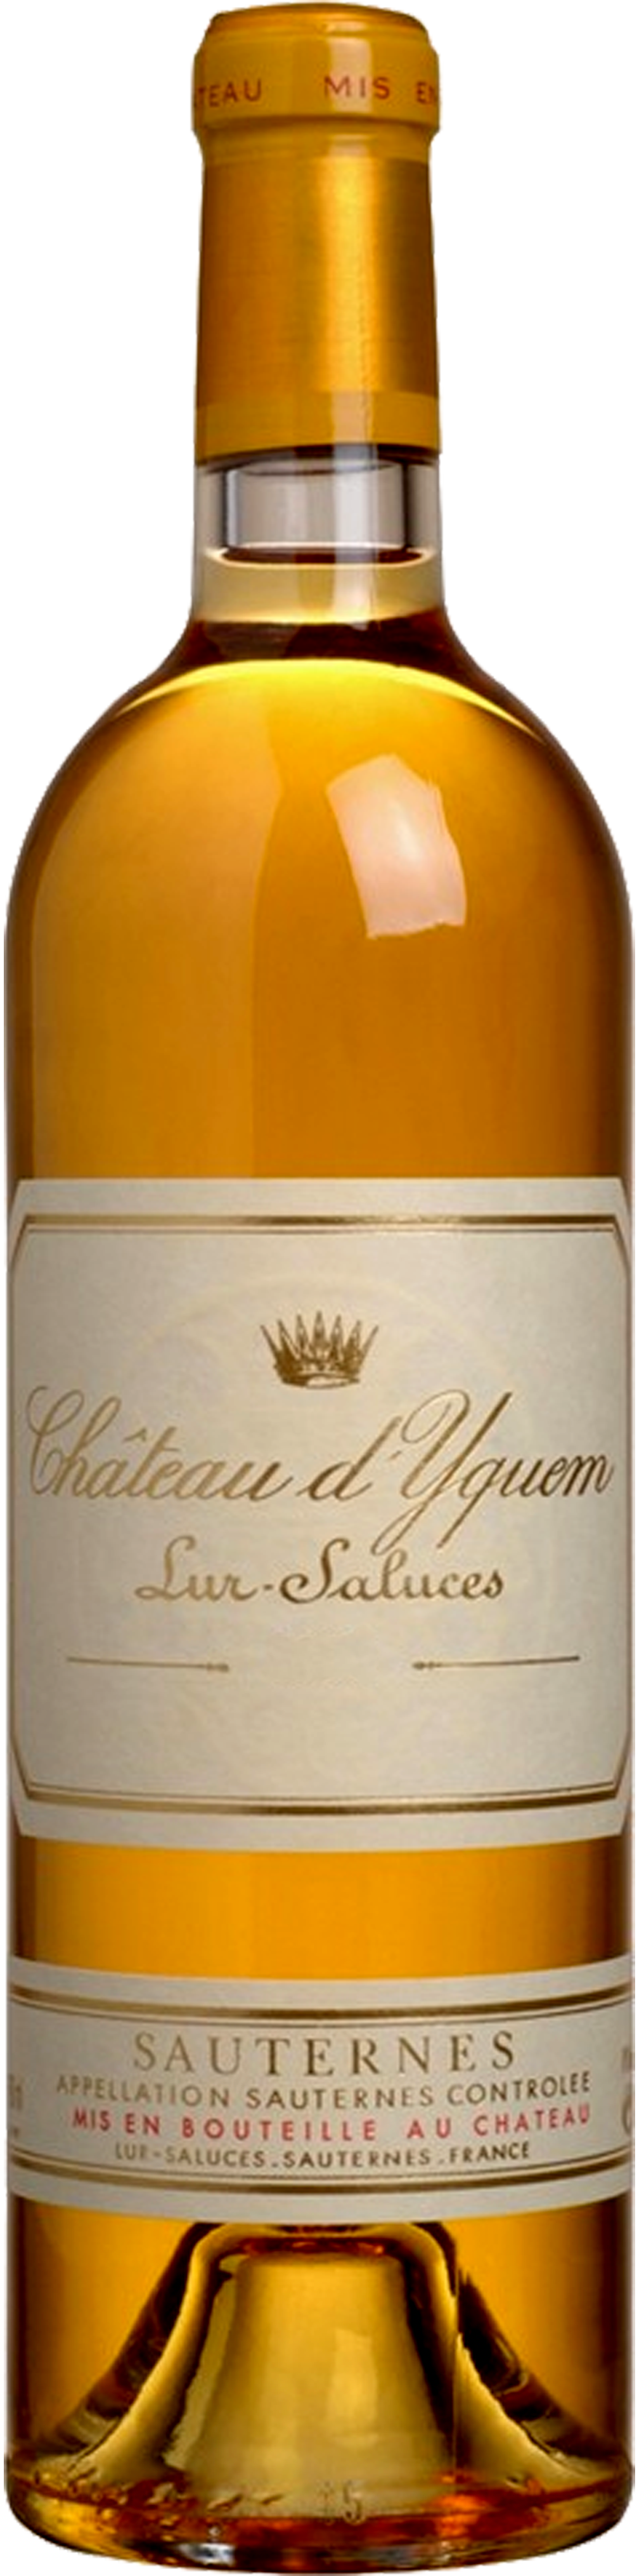 Bottle shot of 2008 Château d'Yquem, 1er Cru Supérieur Sauternes